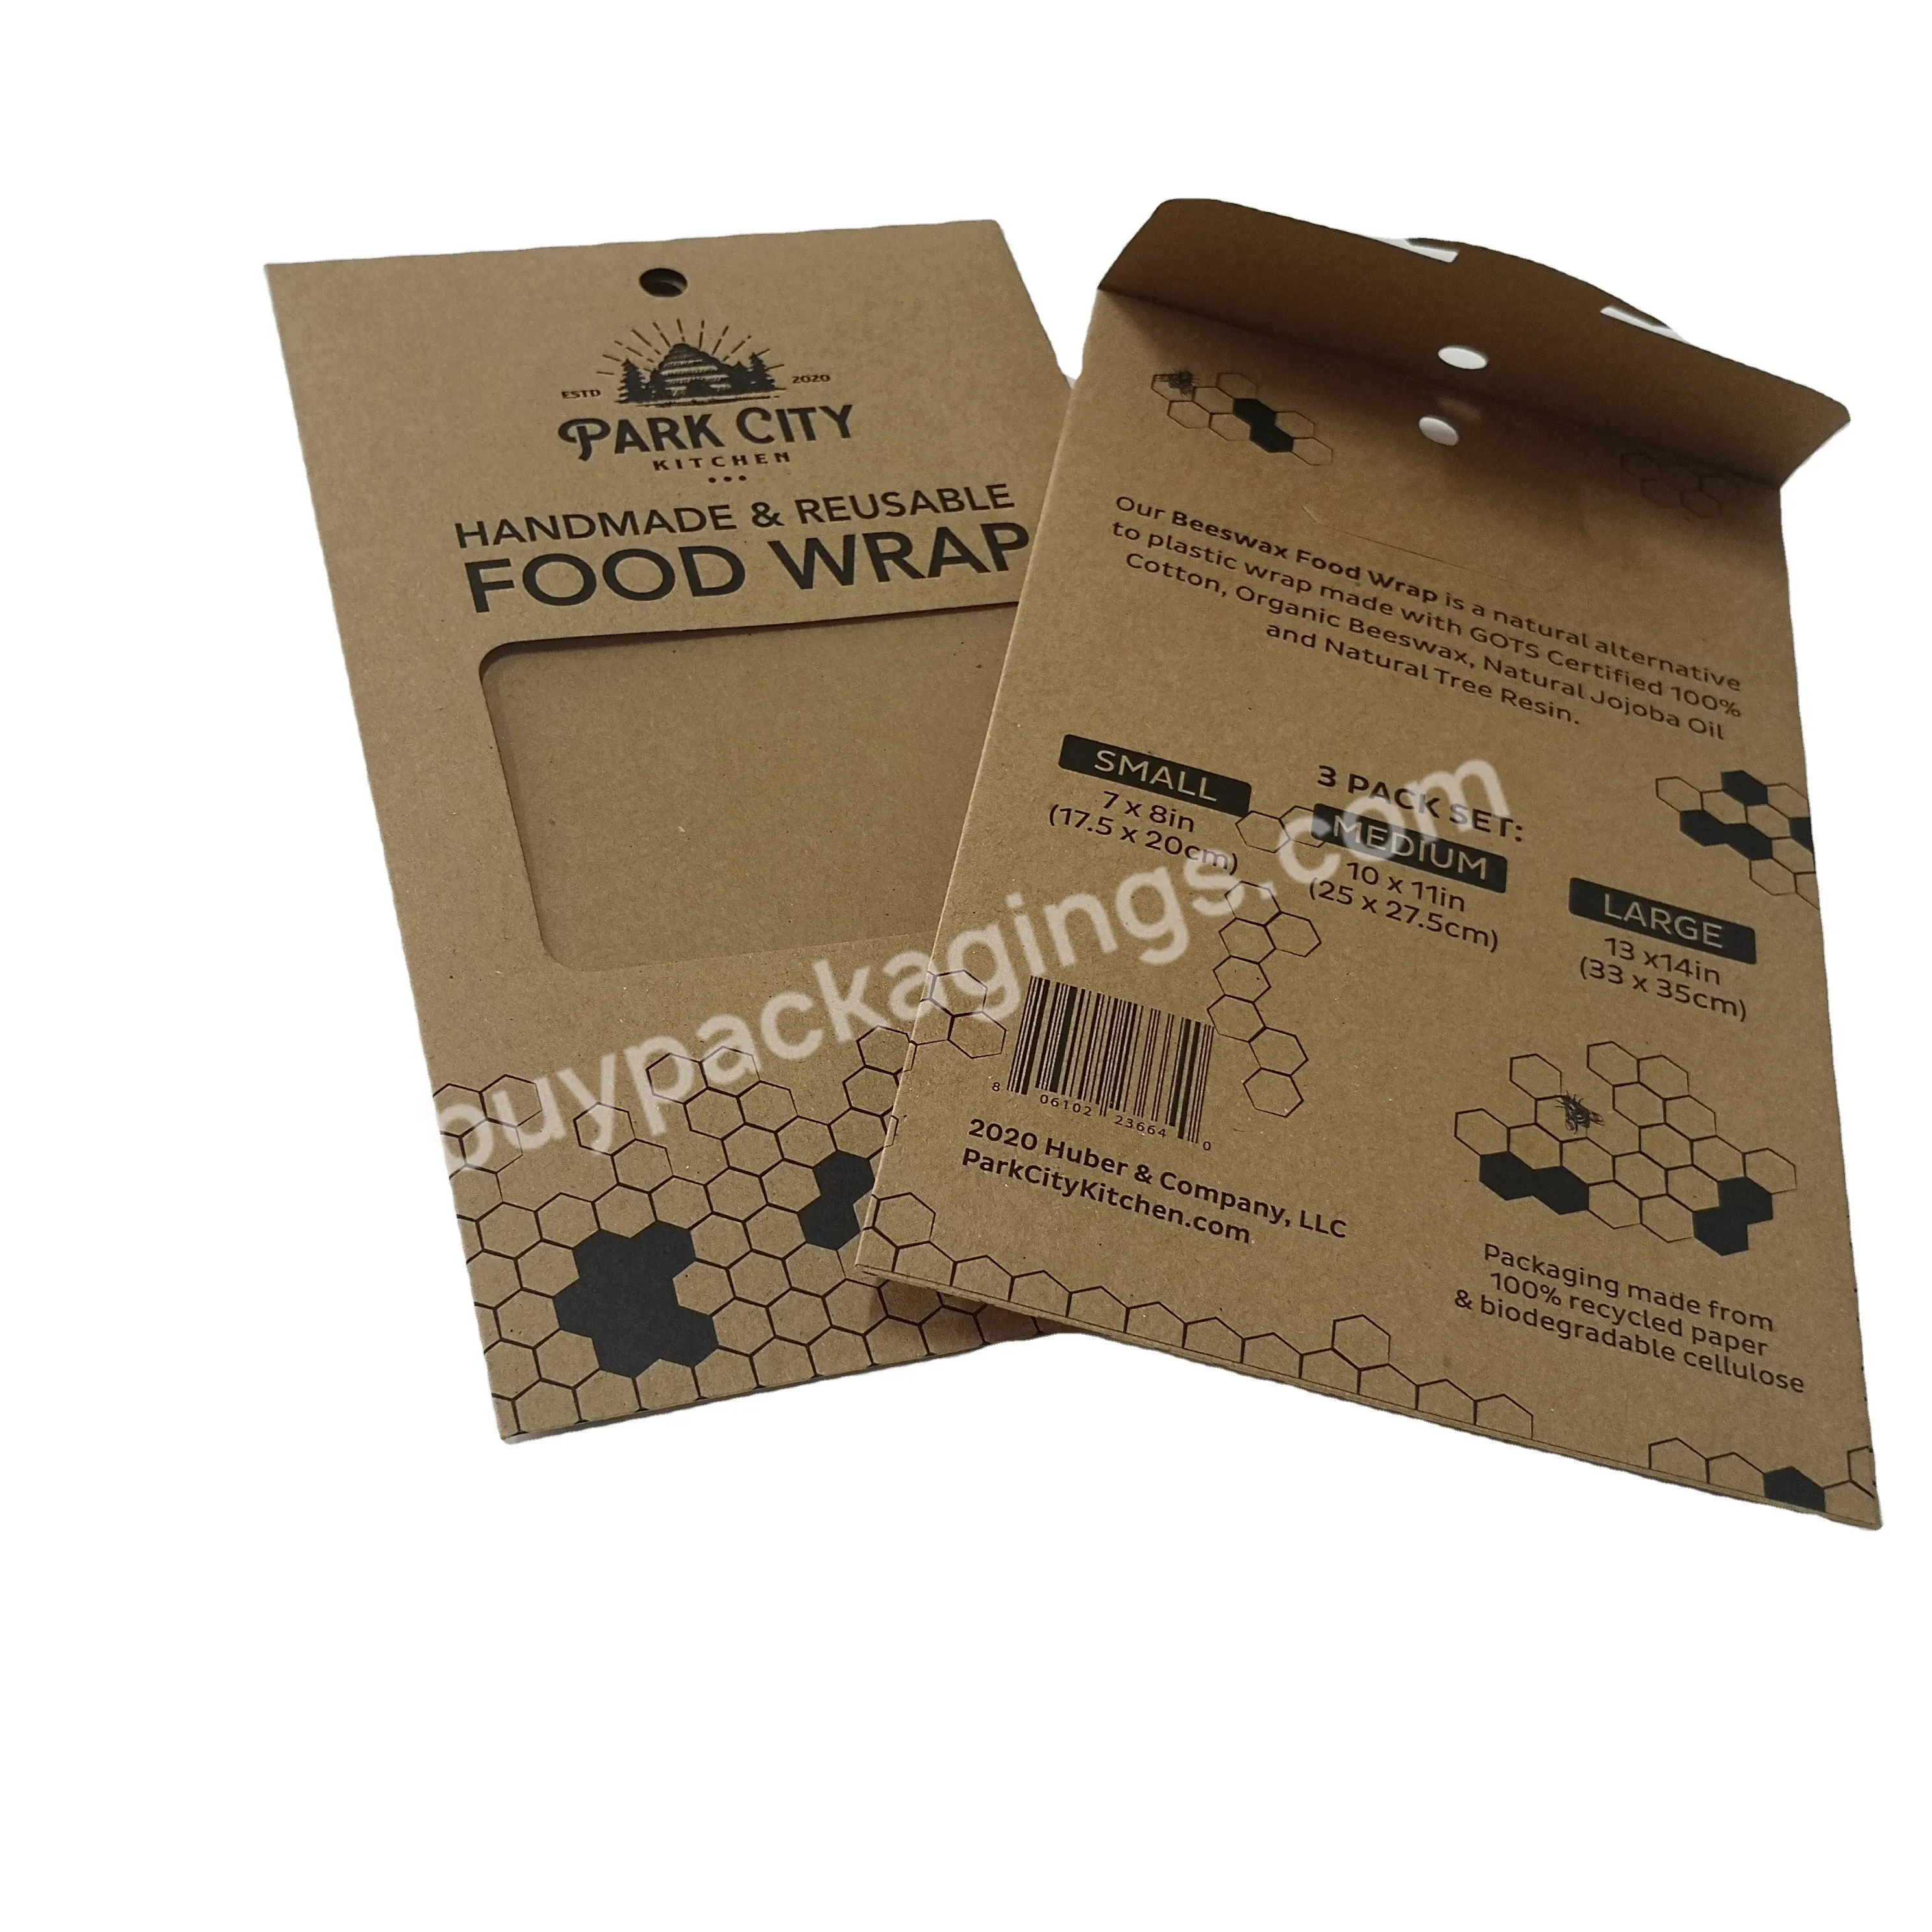 Kraft Paper Envelope Packaging Cardboard Sleeve Receipt Envelope - Buy Cardboard Sleeve Receipt Envelope,Kraft Paper Envelope.